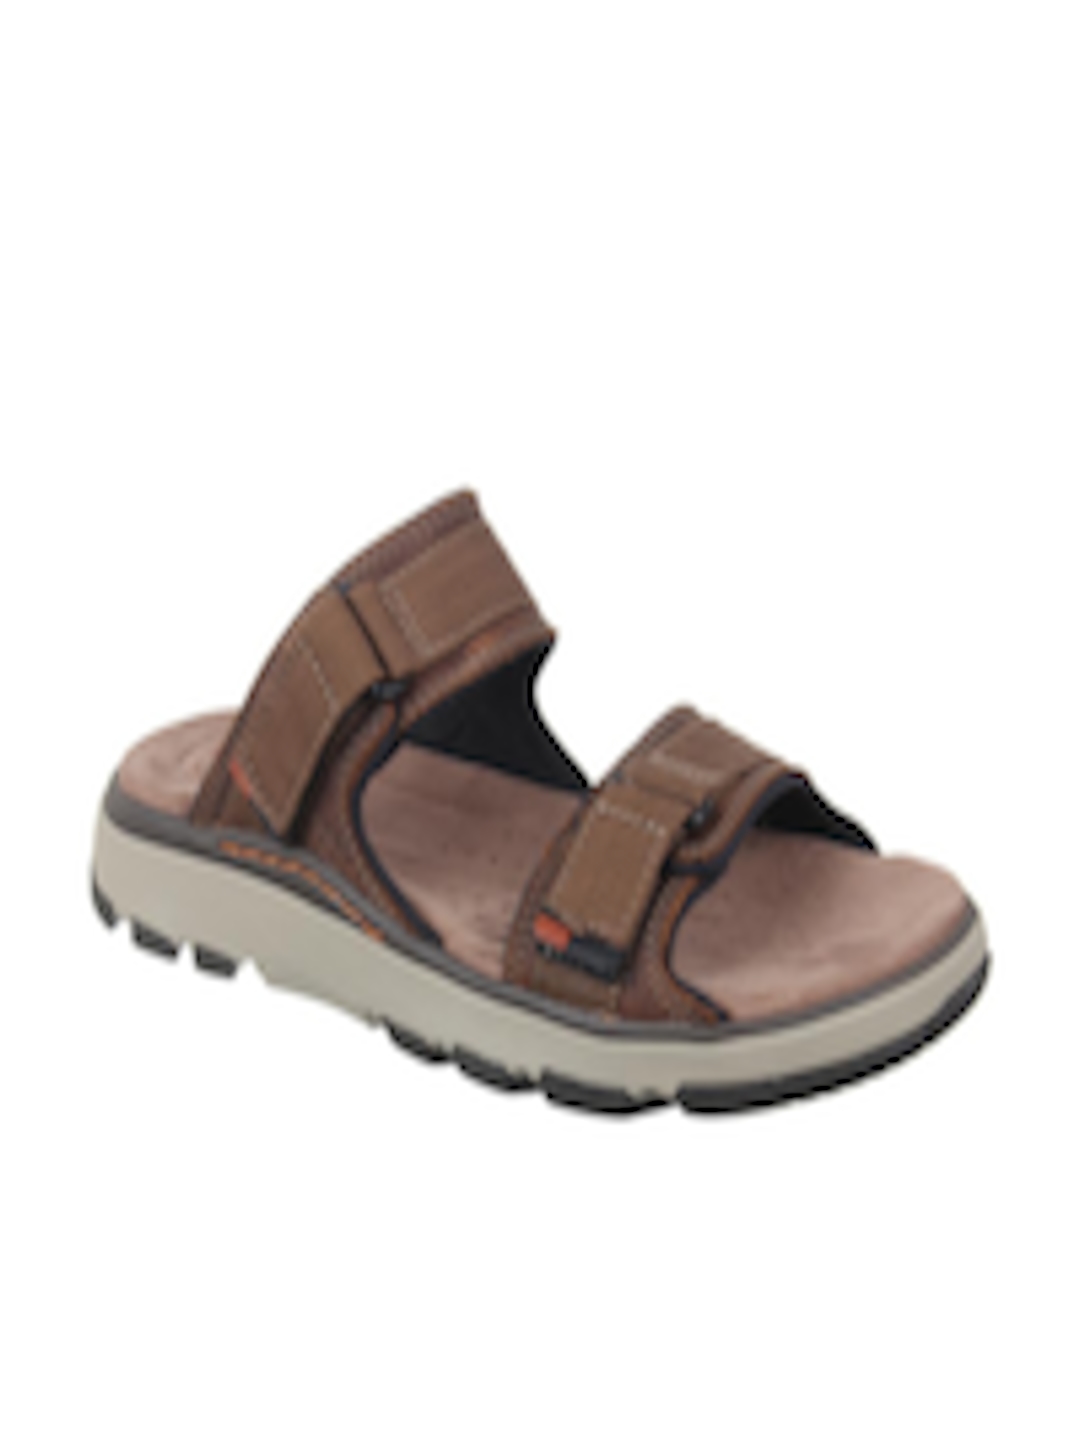 Buy Clarks Men Brown Sandals - Sandals for Men 9802433 | Myntra